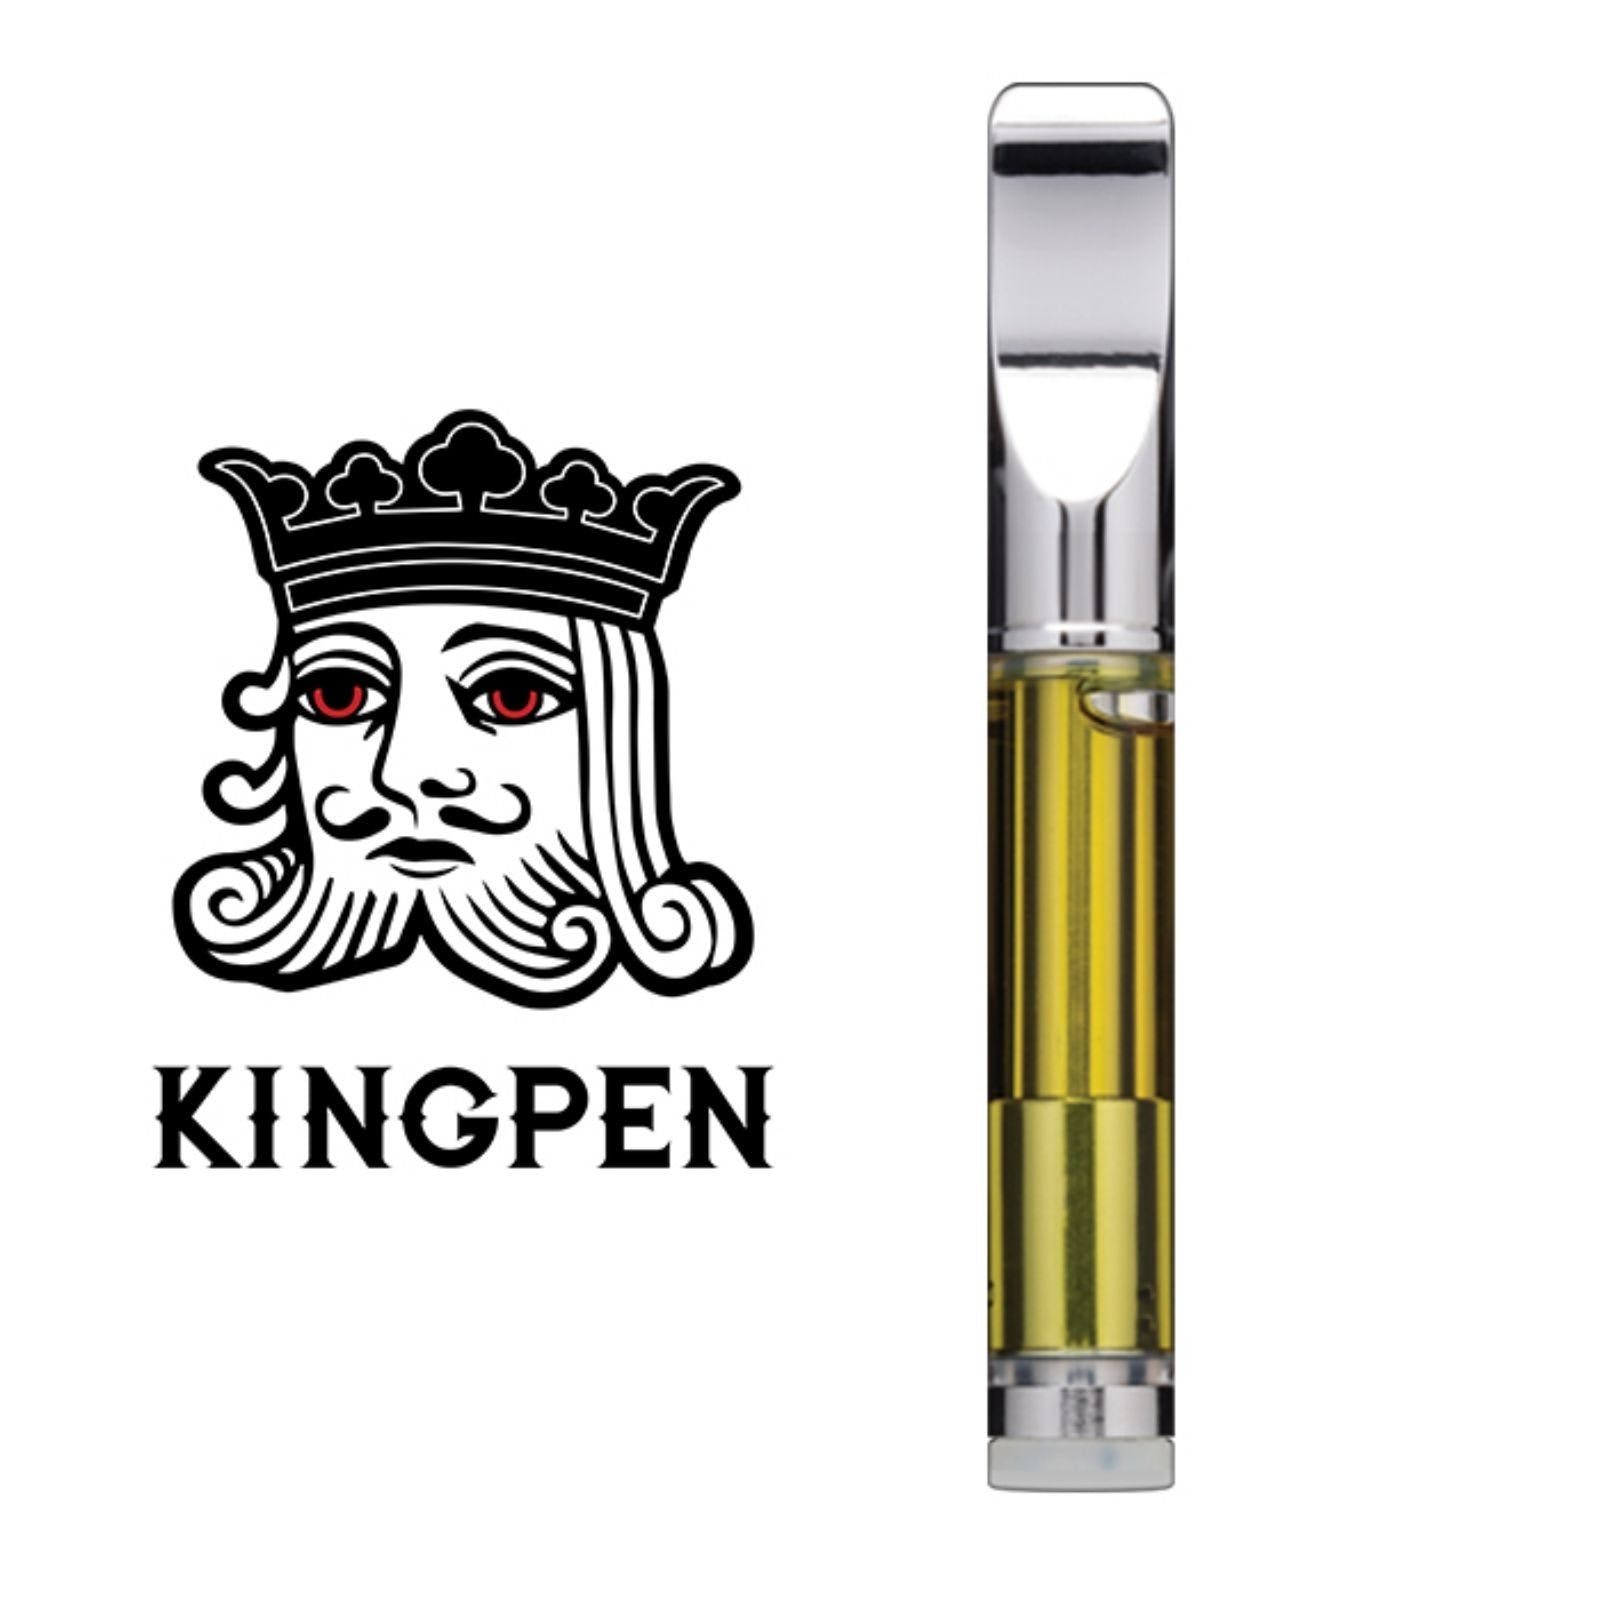 KINGPEN - King Louie XIII